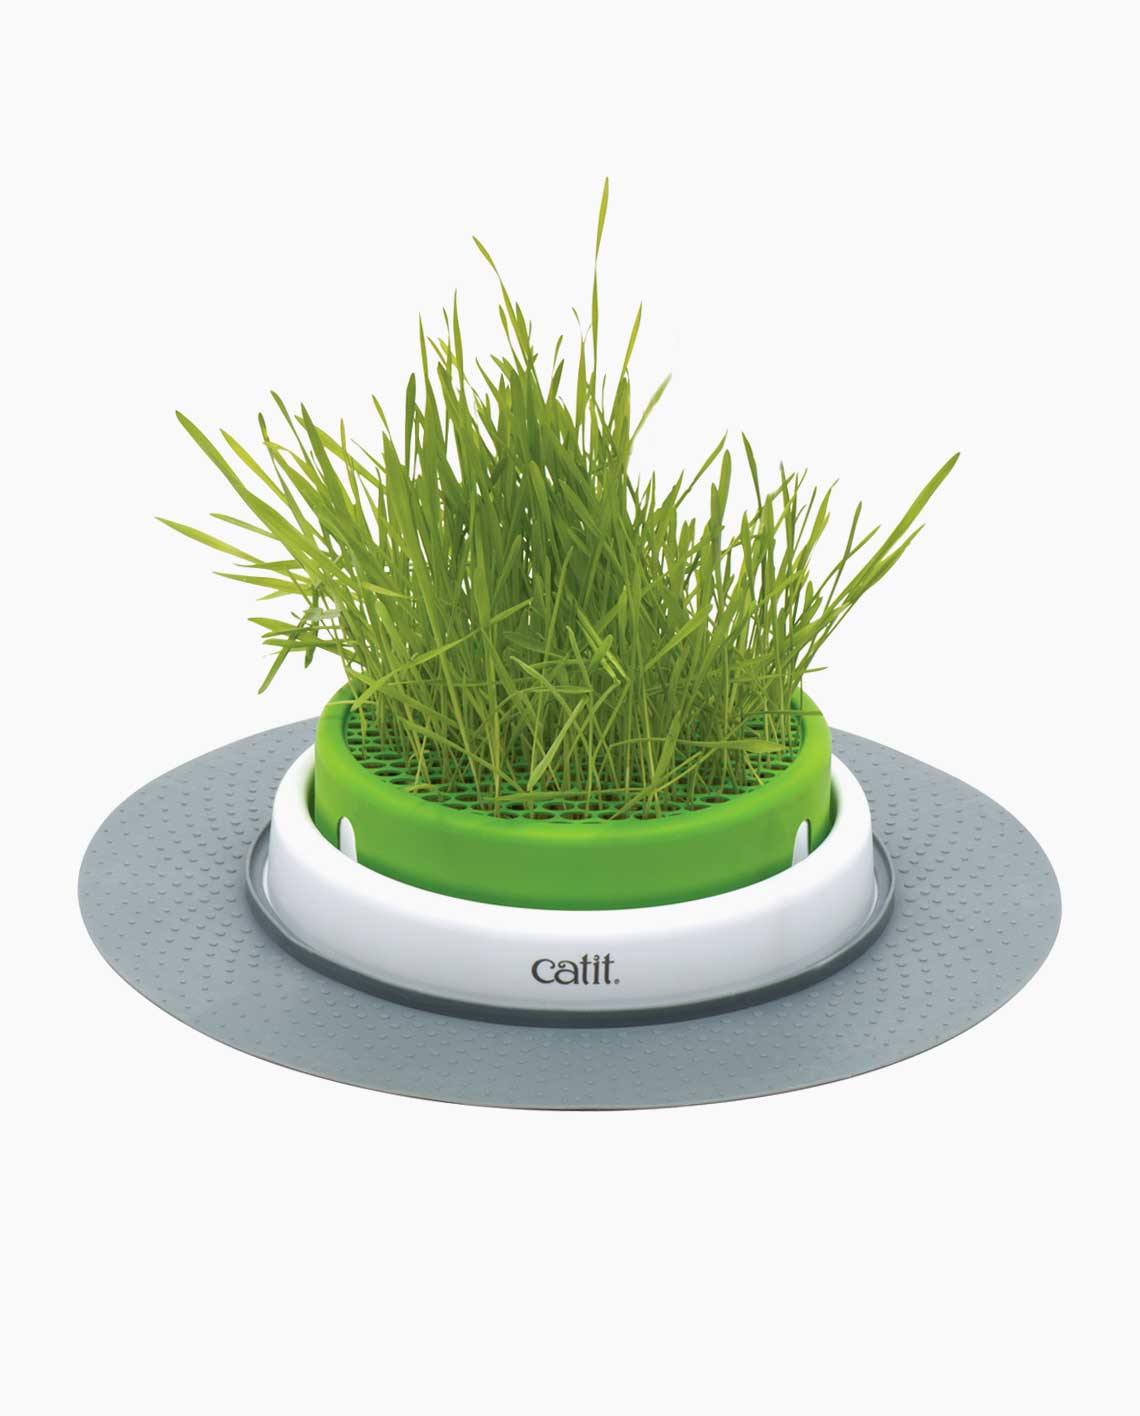 Sense 2.0 Grass Planter de Catit